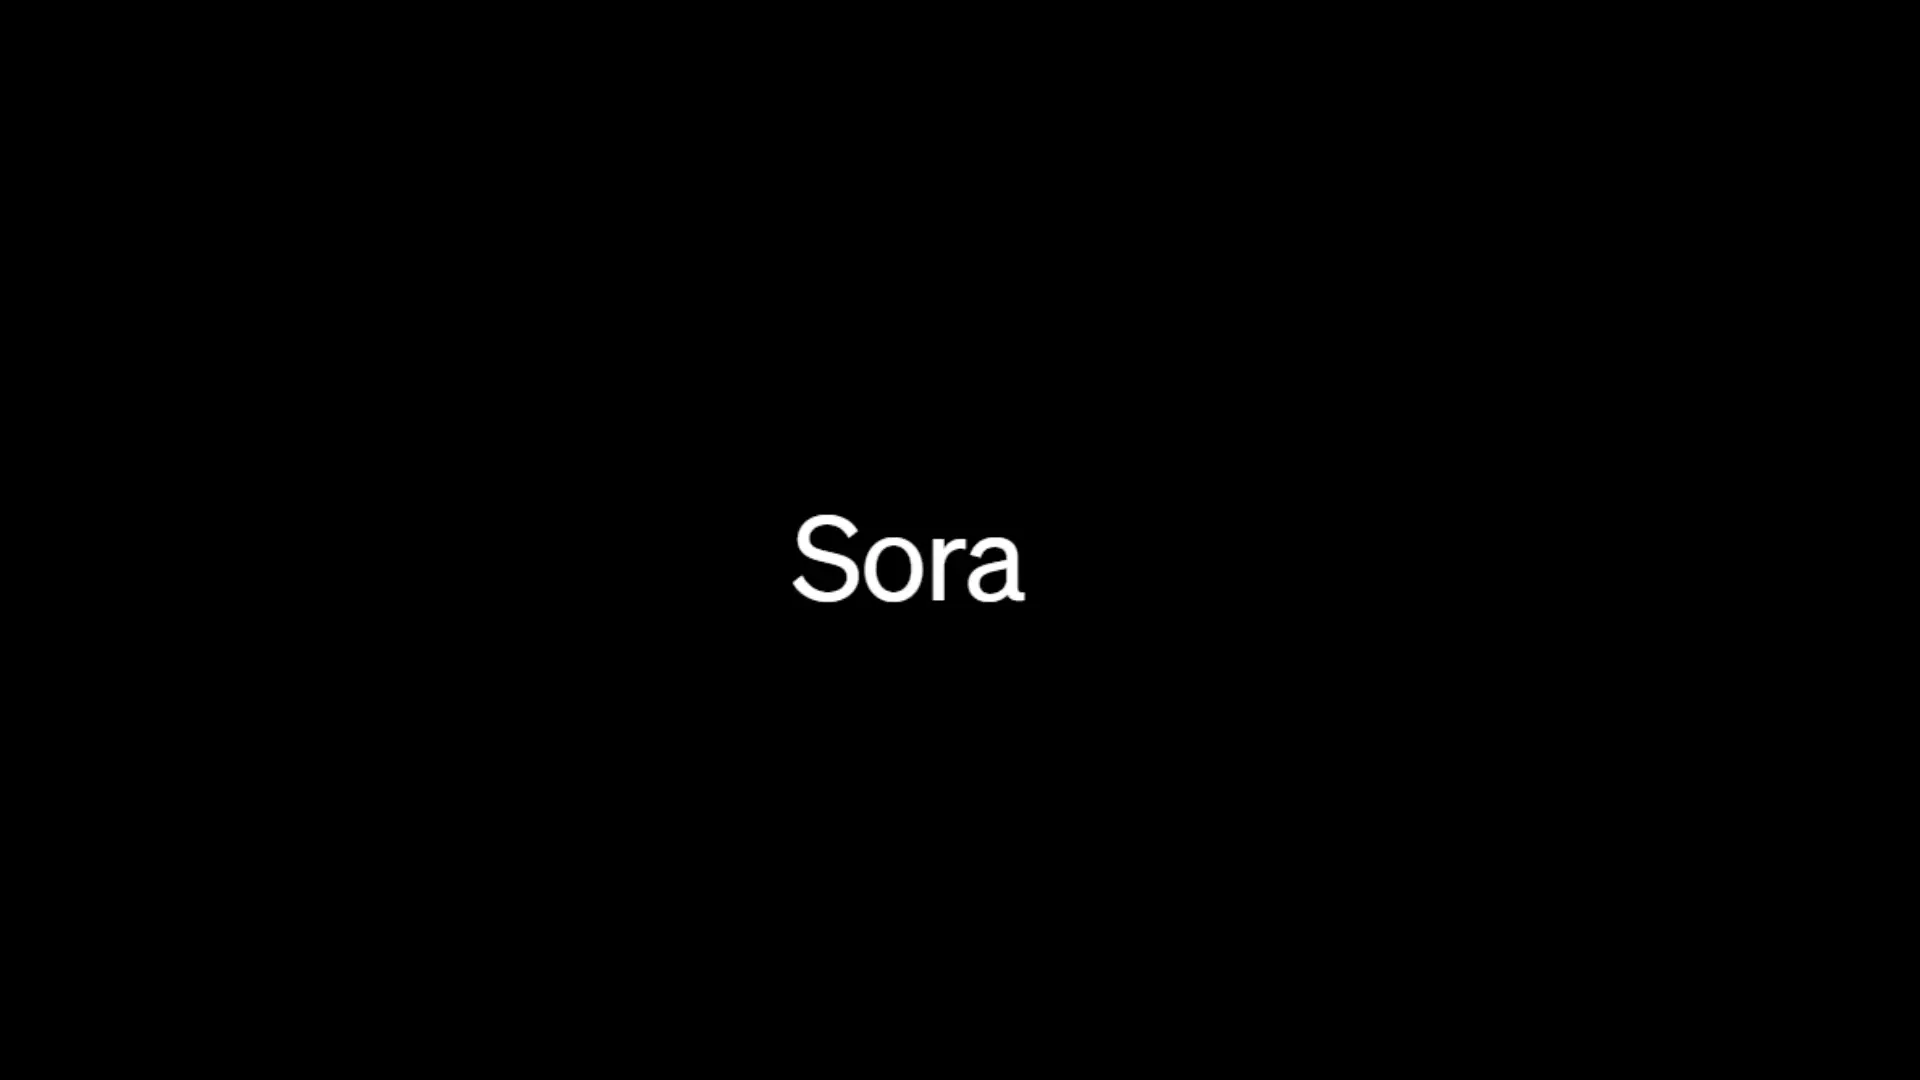 OpenAI представила Sora — генератор качественных видео по описанию